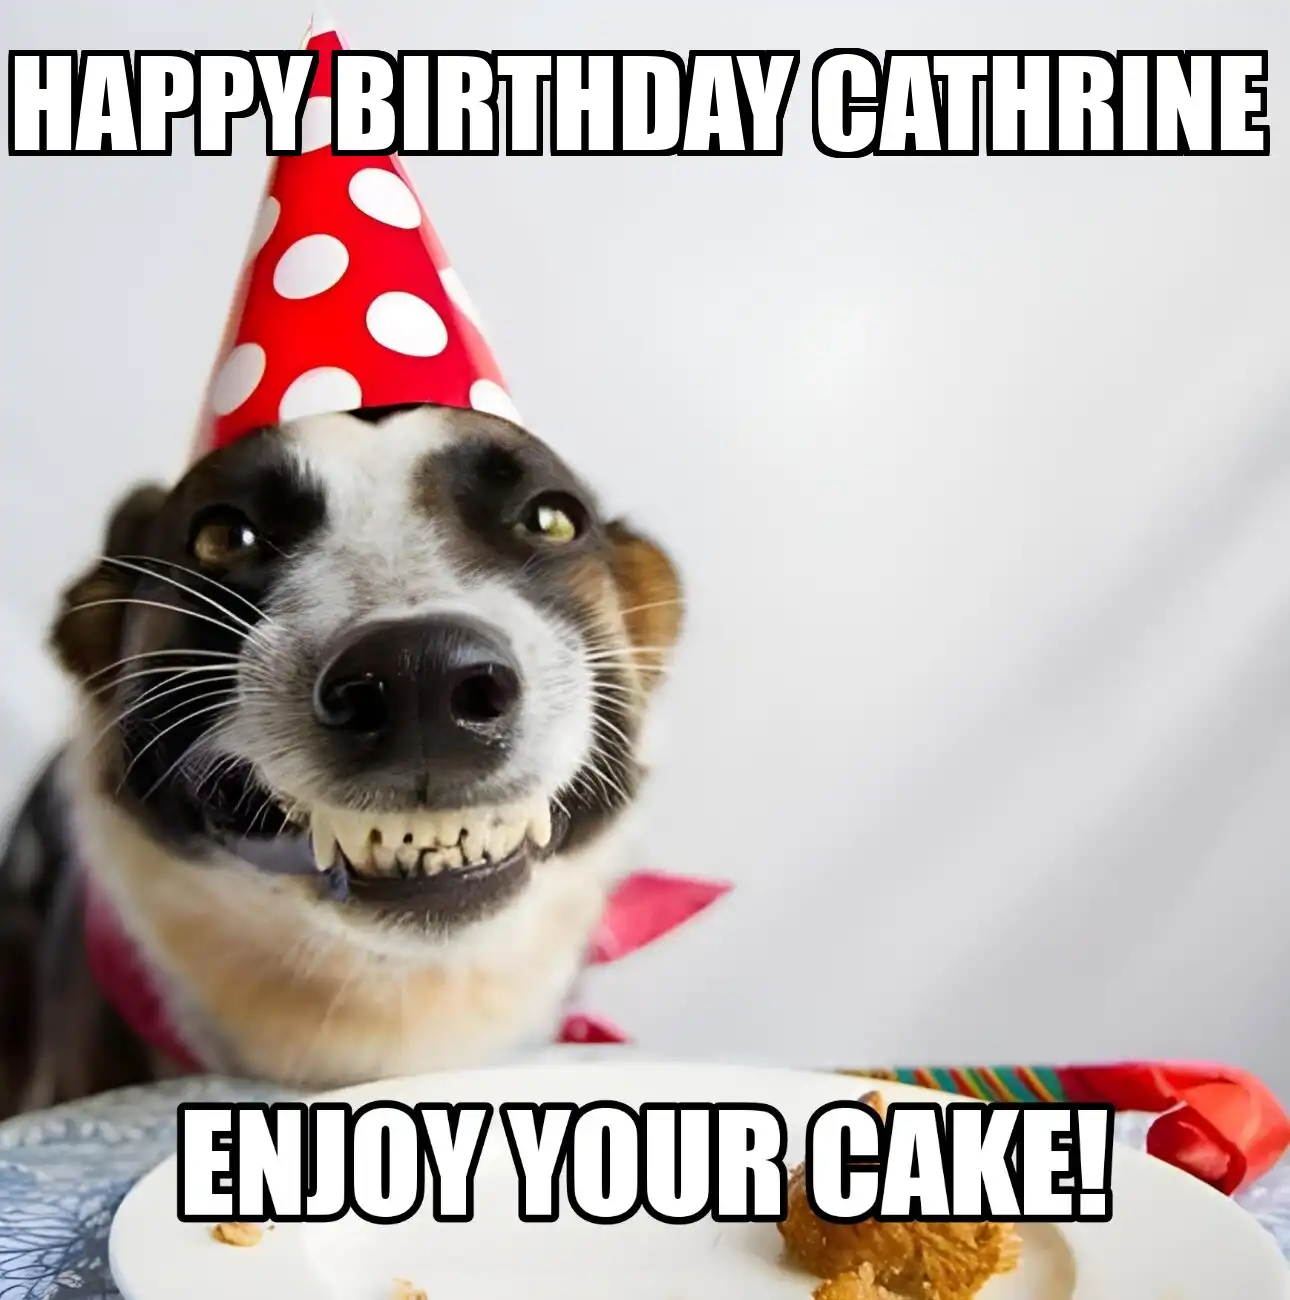 Happy Birthday Cathrine Enjoy Your Cake Dog Meme